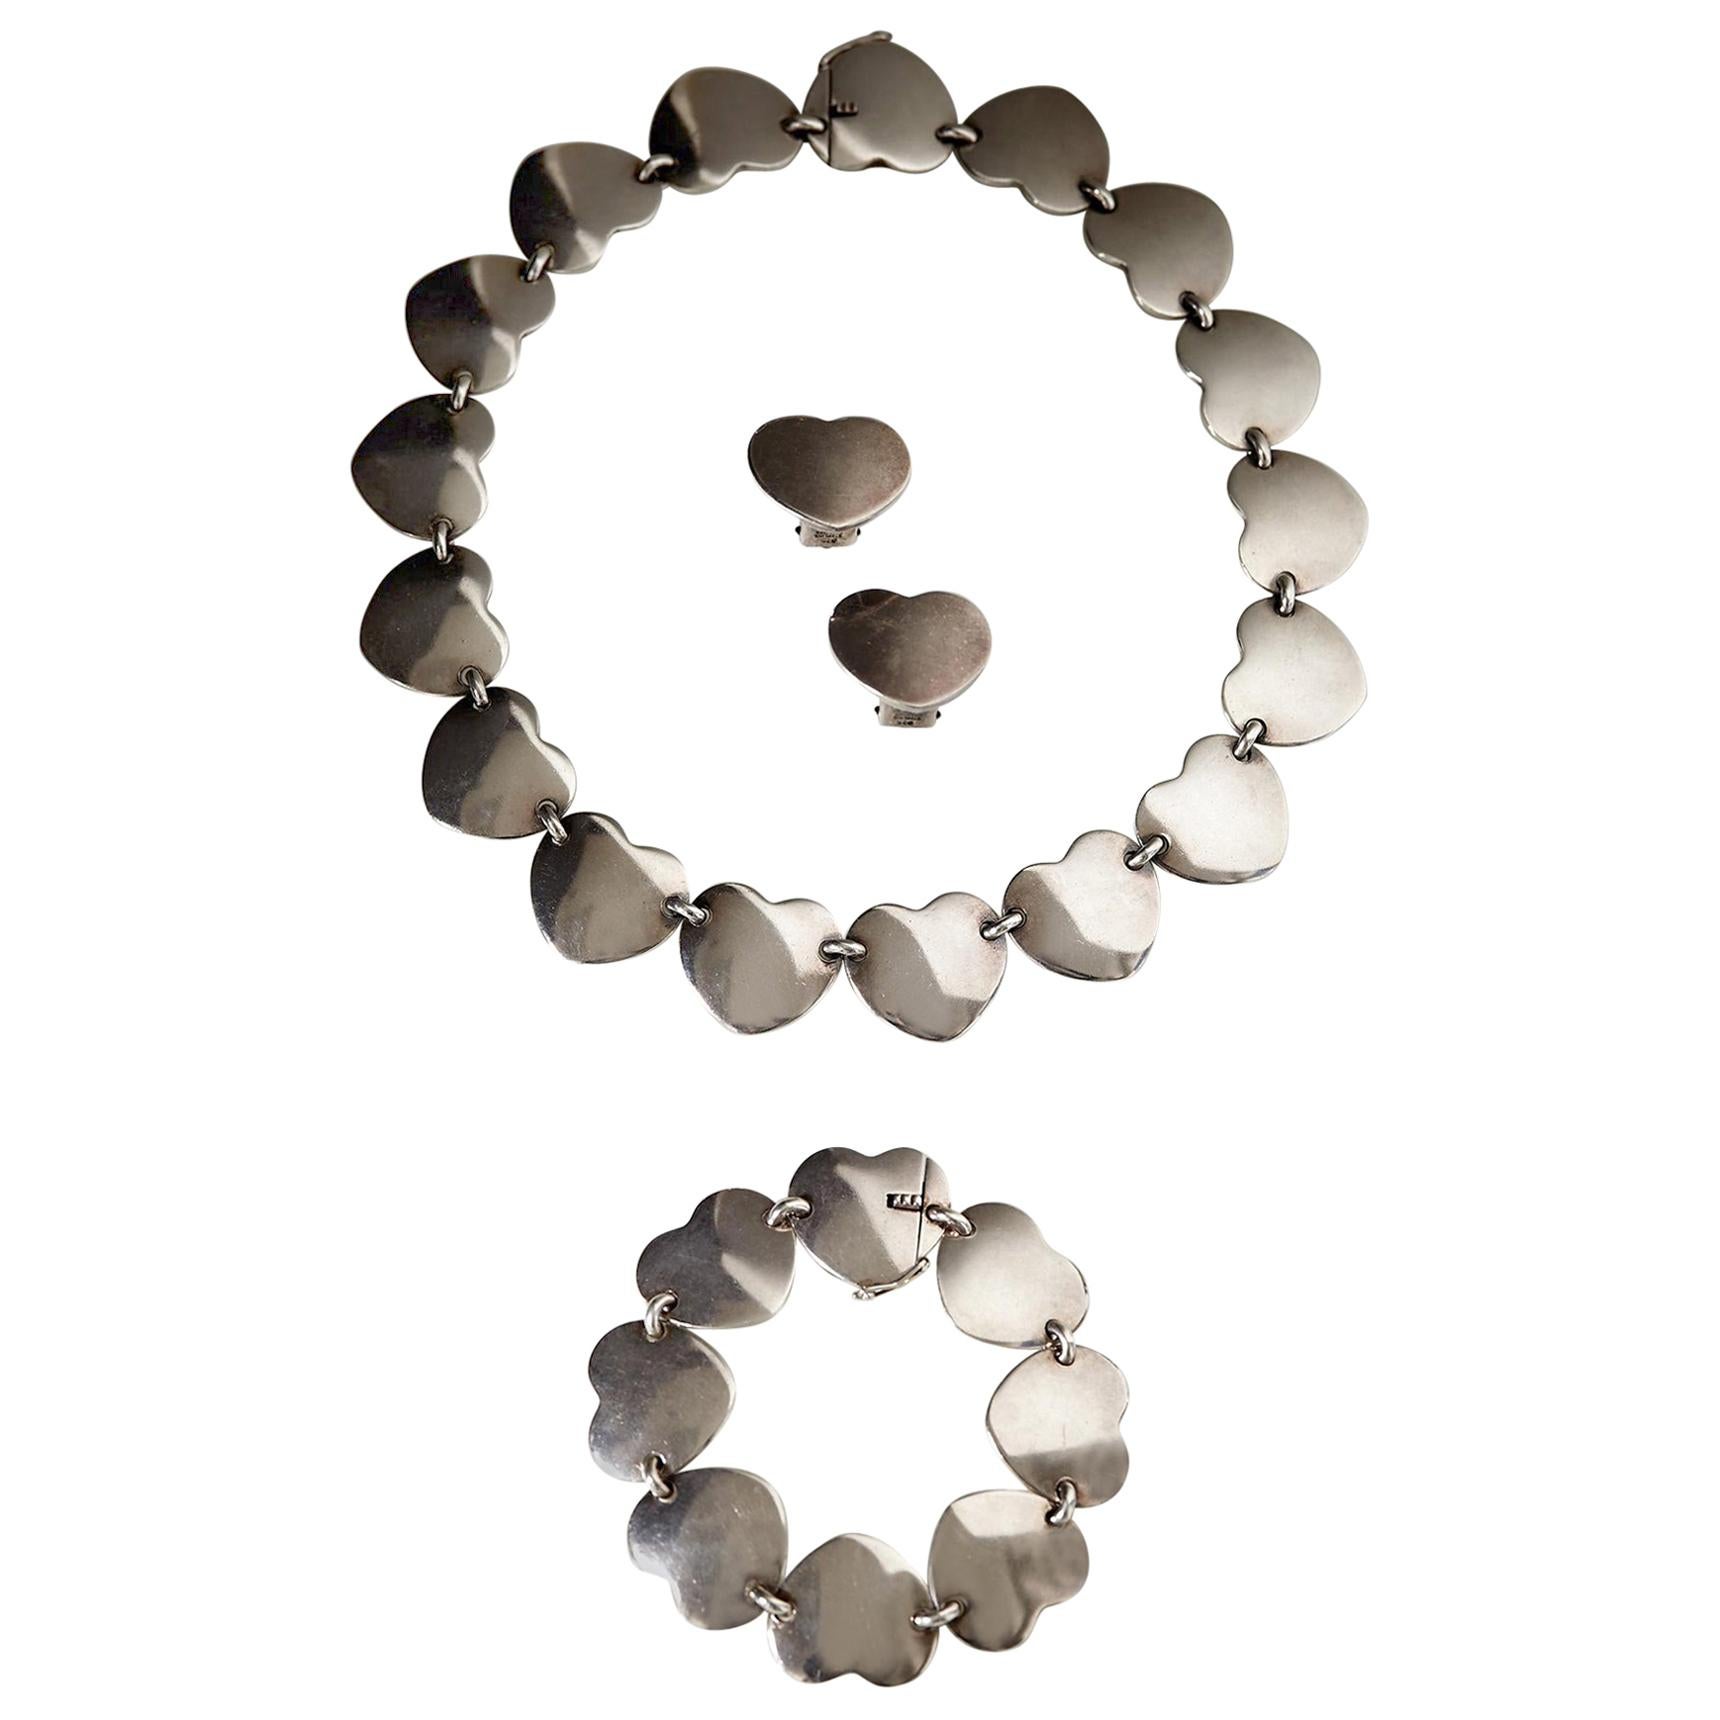 1950s Scandinavian Modern Sterling Silver Heart-Shaped Jewellery Set, Denmark